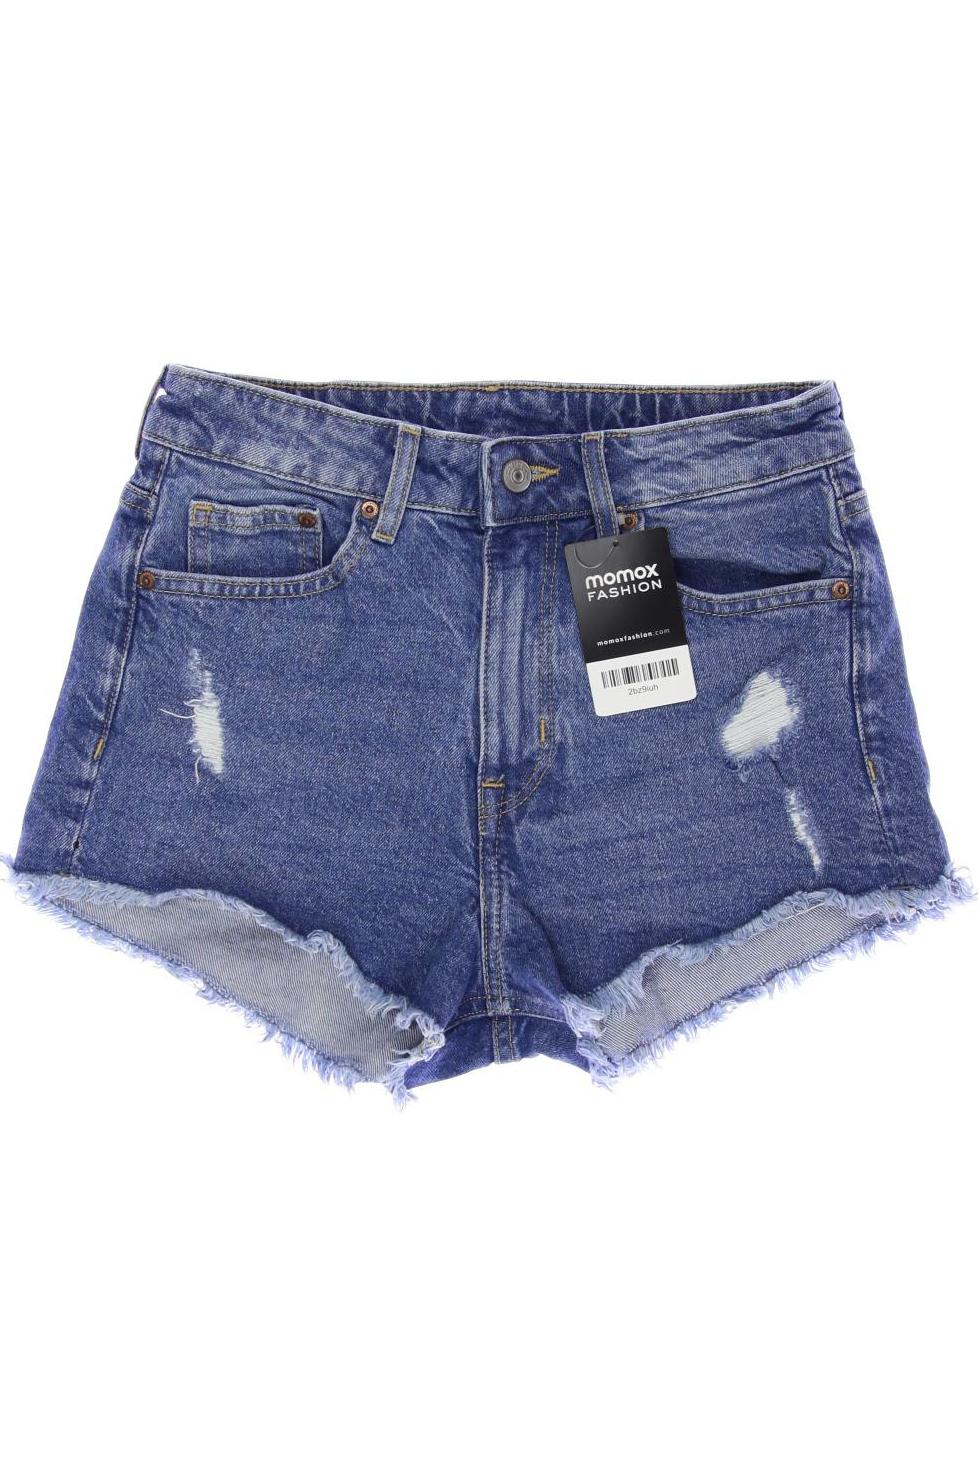 H&M Damen Shorts, blau, Gr. 36 von H&M